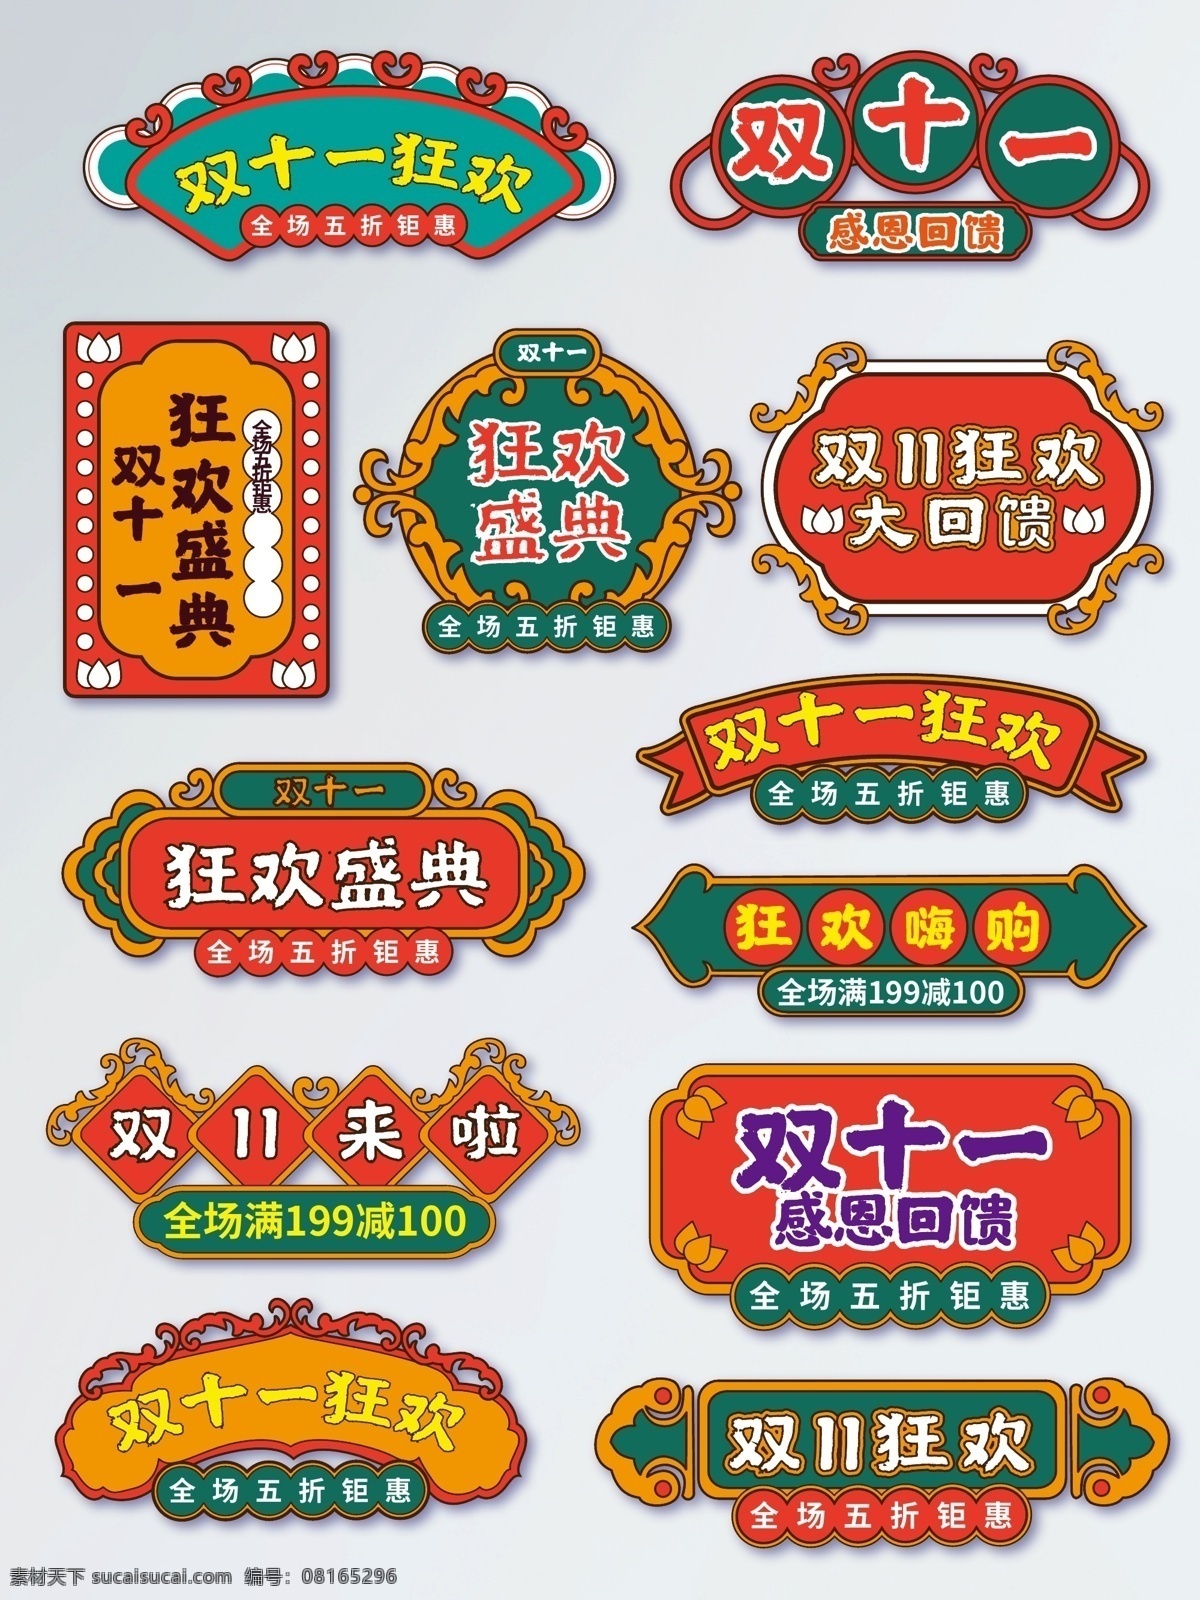 原创 双 狂欢节 复古 装饰 字体 排 复古装饰 字体排版 双11 标题框 双十一 双11来了 中国元素 中国风 复古风 狂欢盛典 狂欢